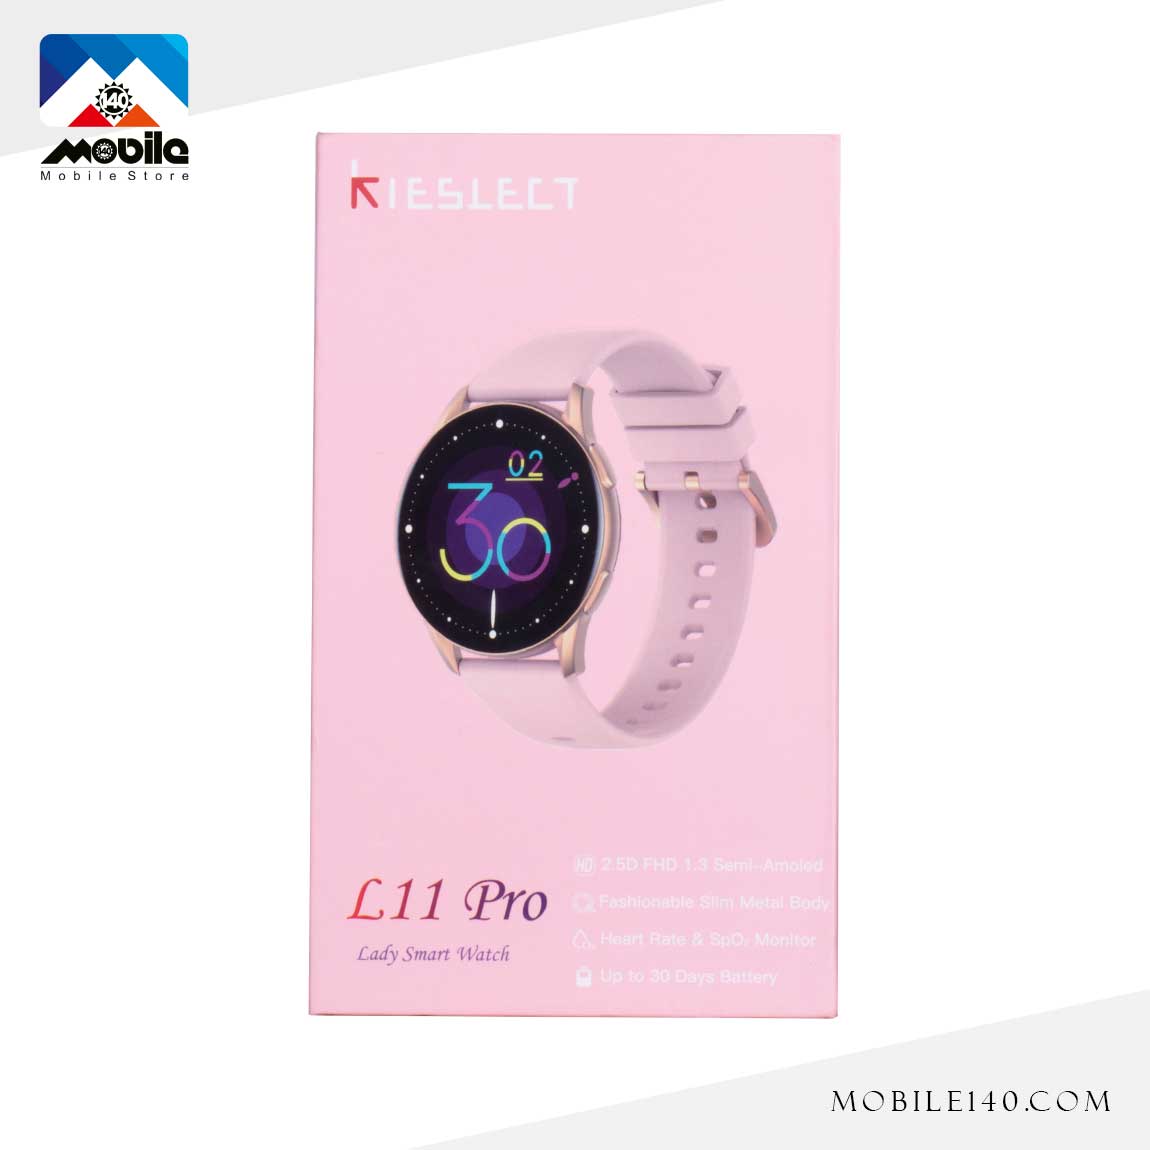 Kieslect-L11-Pro-Smart-Watch 2